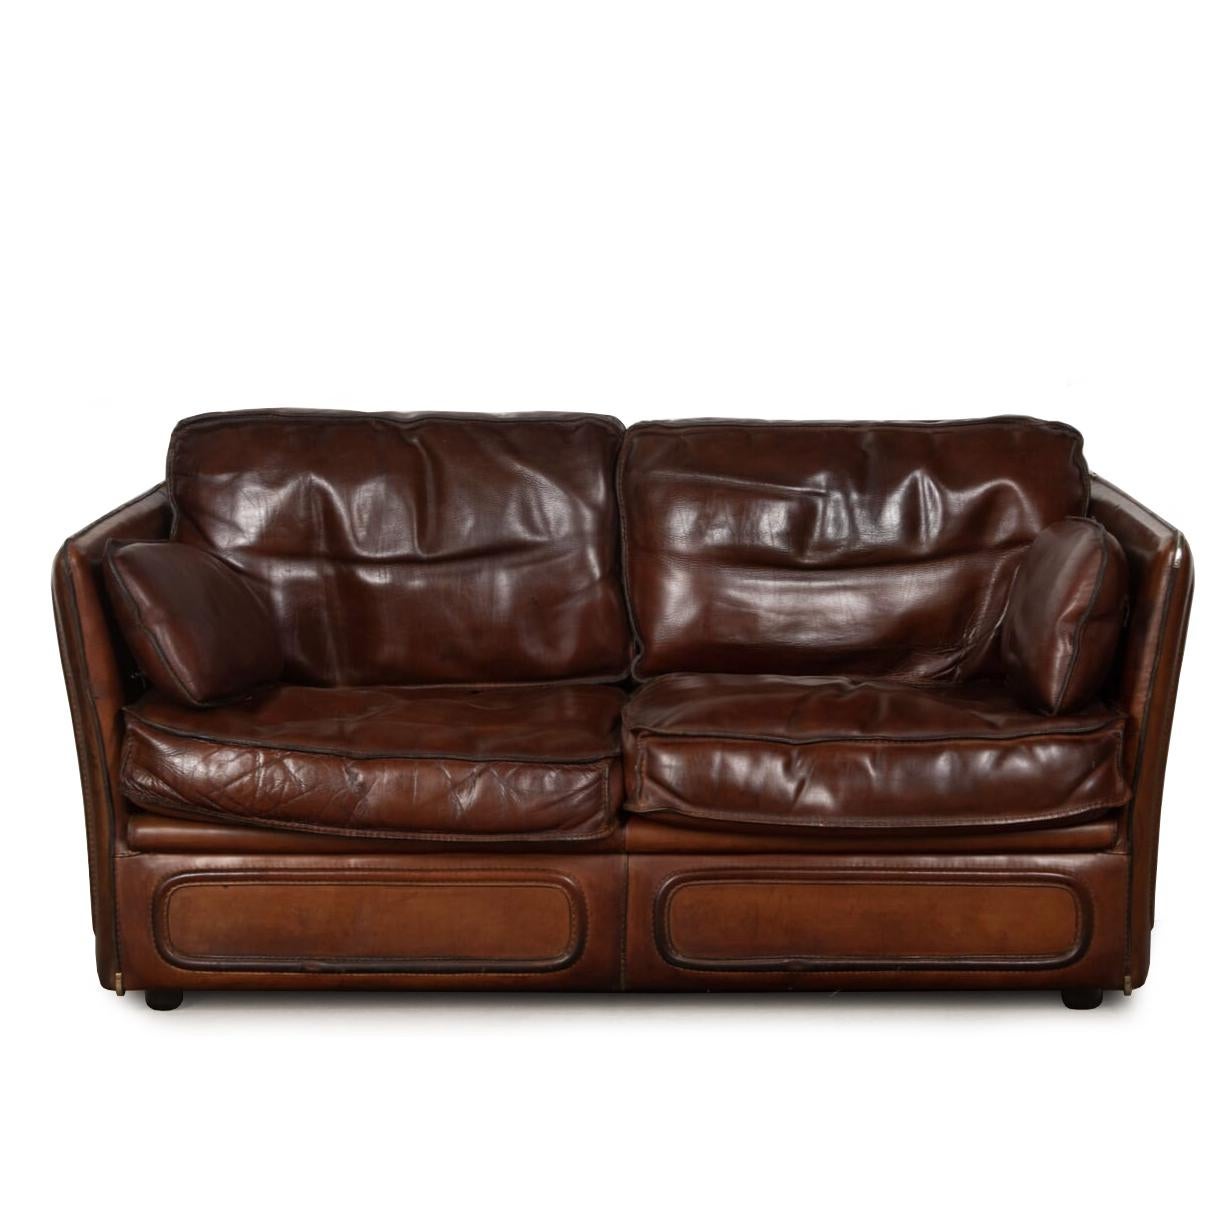 Das stilvolle Zweisitzer-Sofa aus Leder ist mit einem üppigen, dicken Sattelleder bezogen und mit abgesteppten Kanten und Metallecken versehen.

Die mit Federn gefüllten Kissen sind extrem weich und bequem.

um 1950. 

Passende Stühle sind